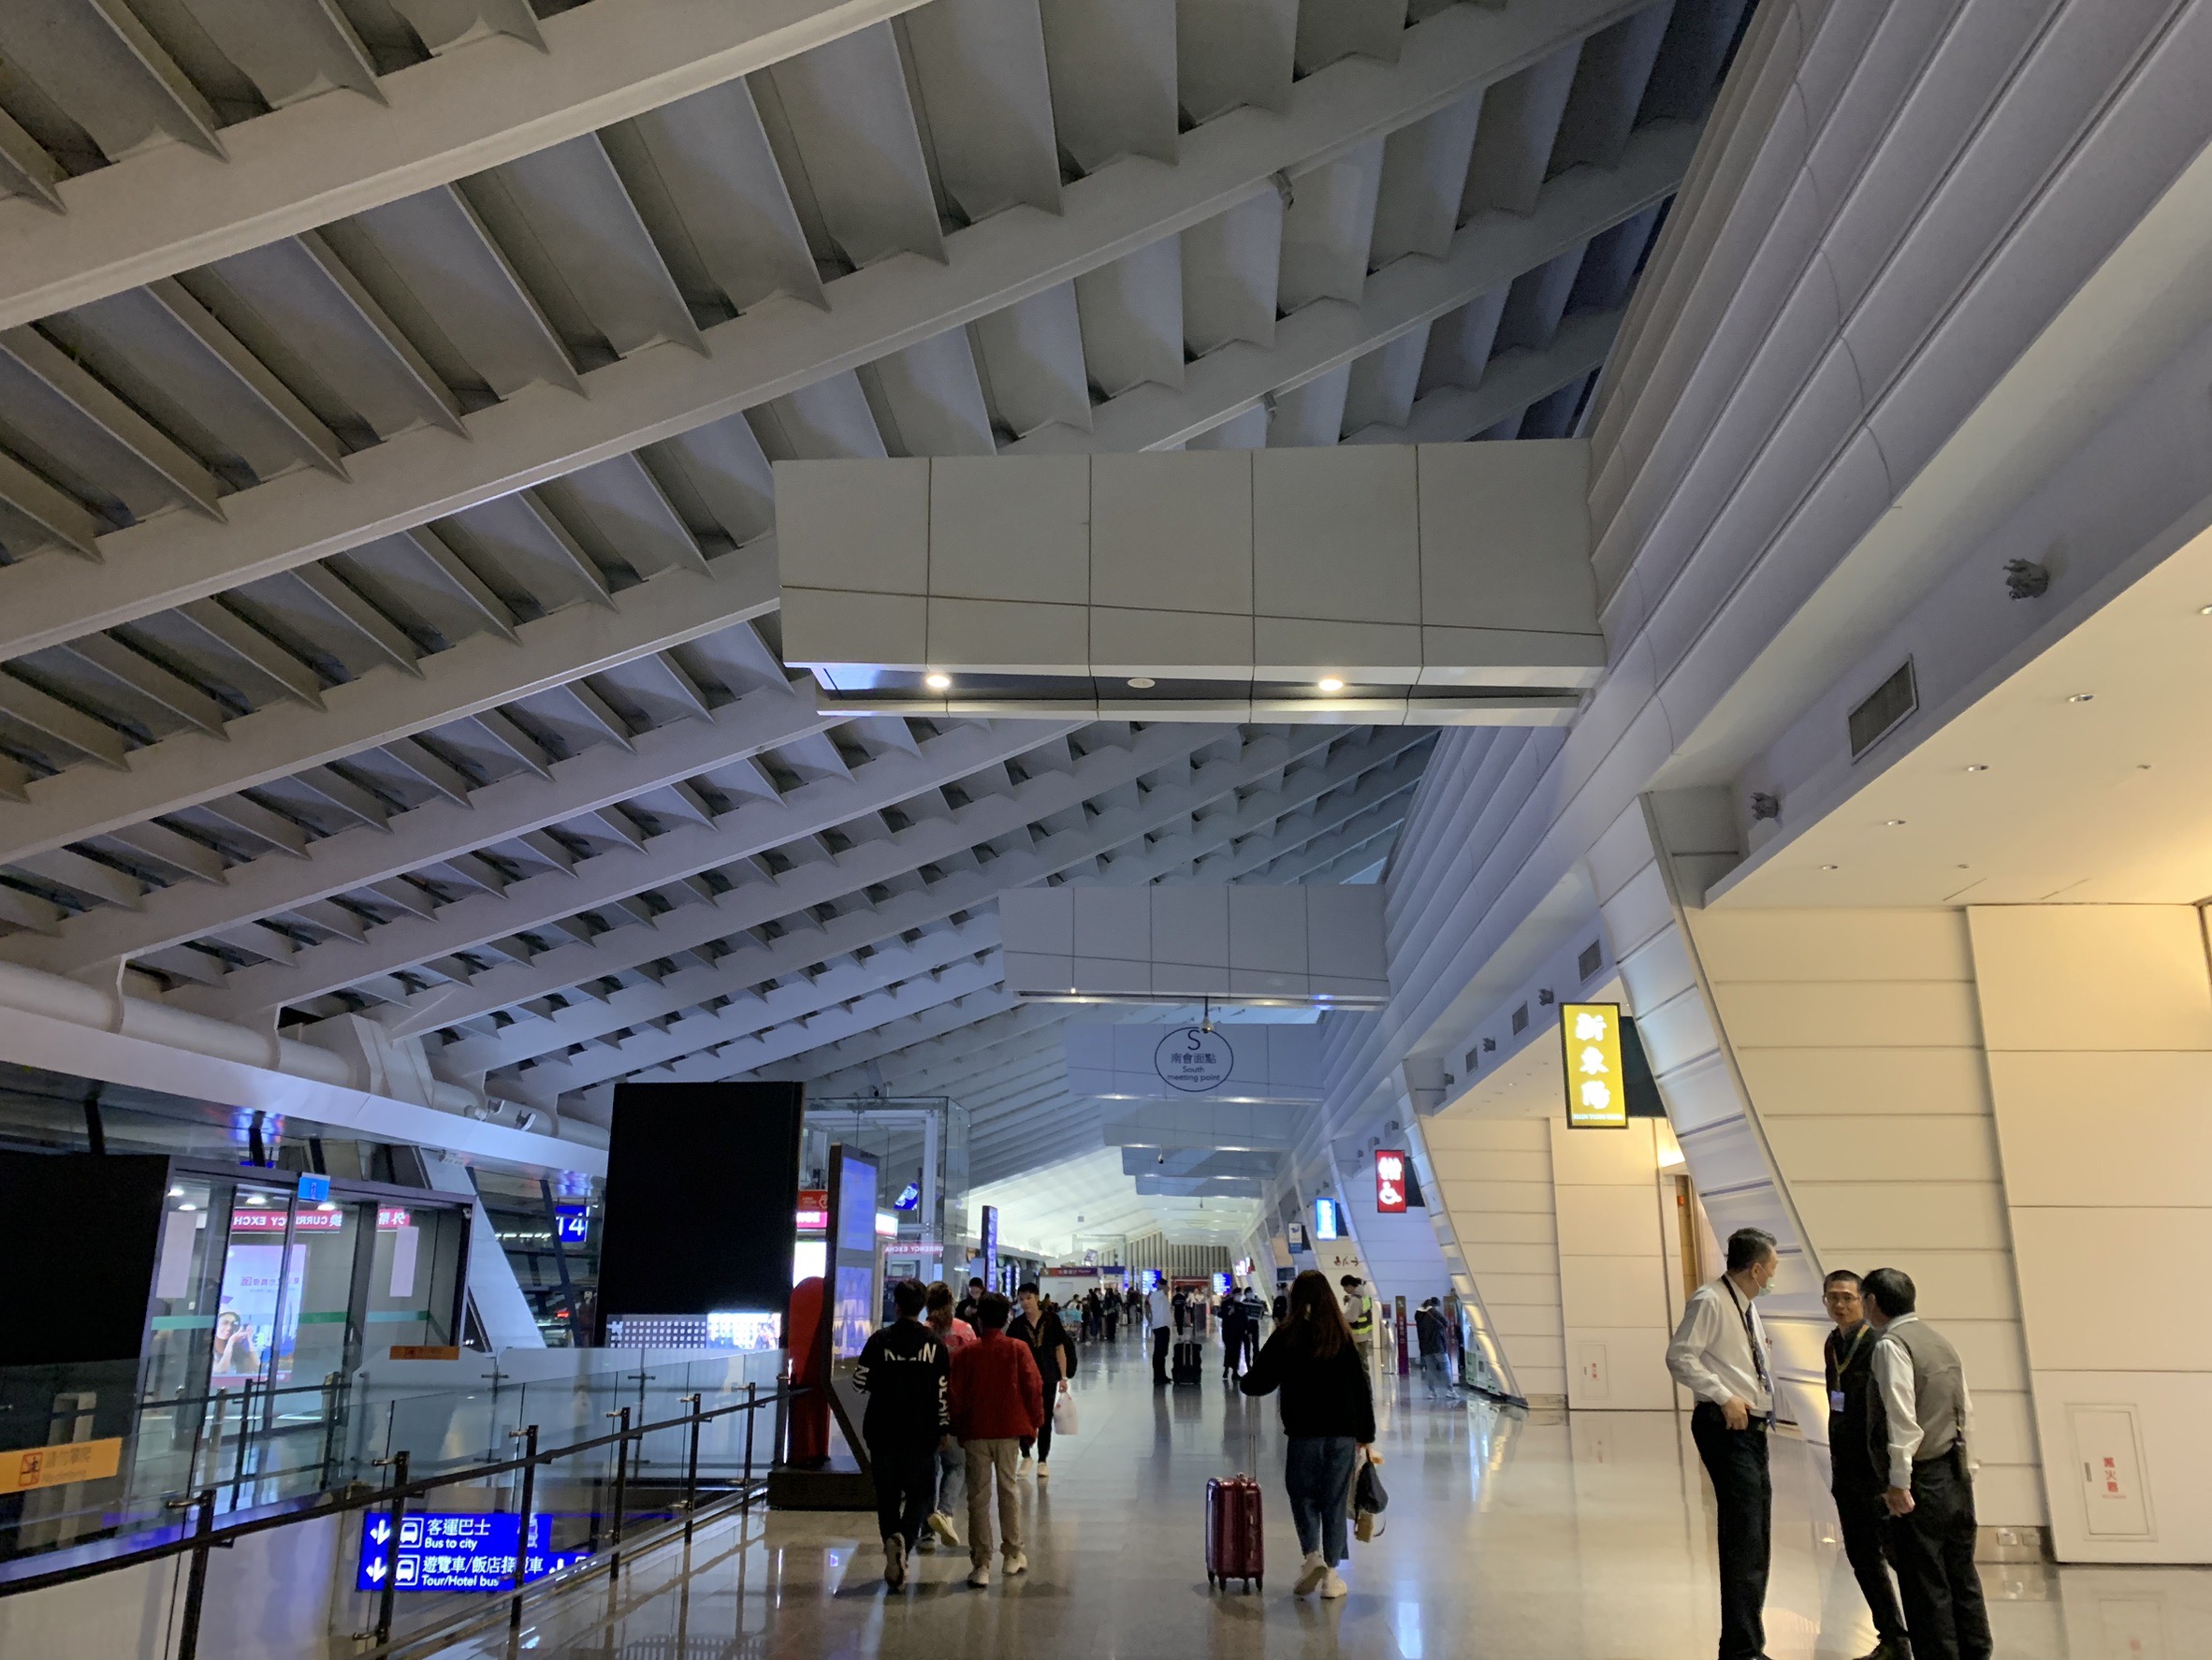 为降低关灯活动对机场营运及旅客出入境作业影响，机场公司已预先进行灯光调整预演。桃机公司提供